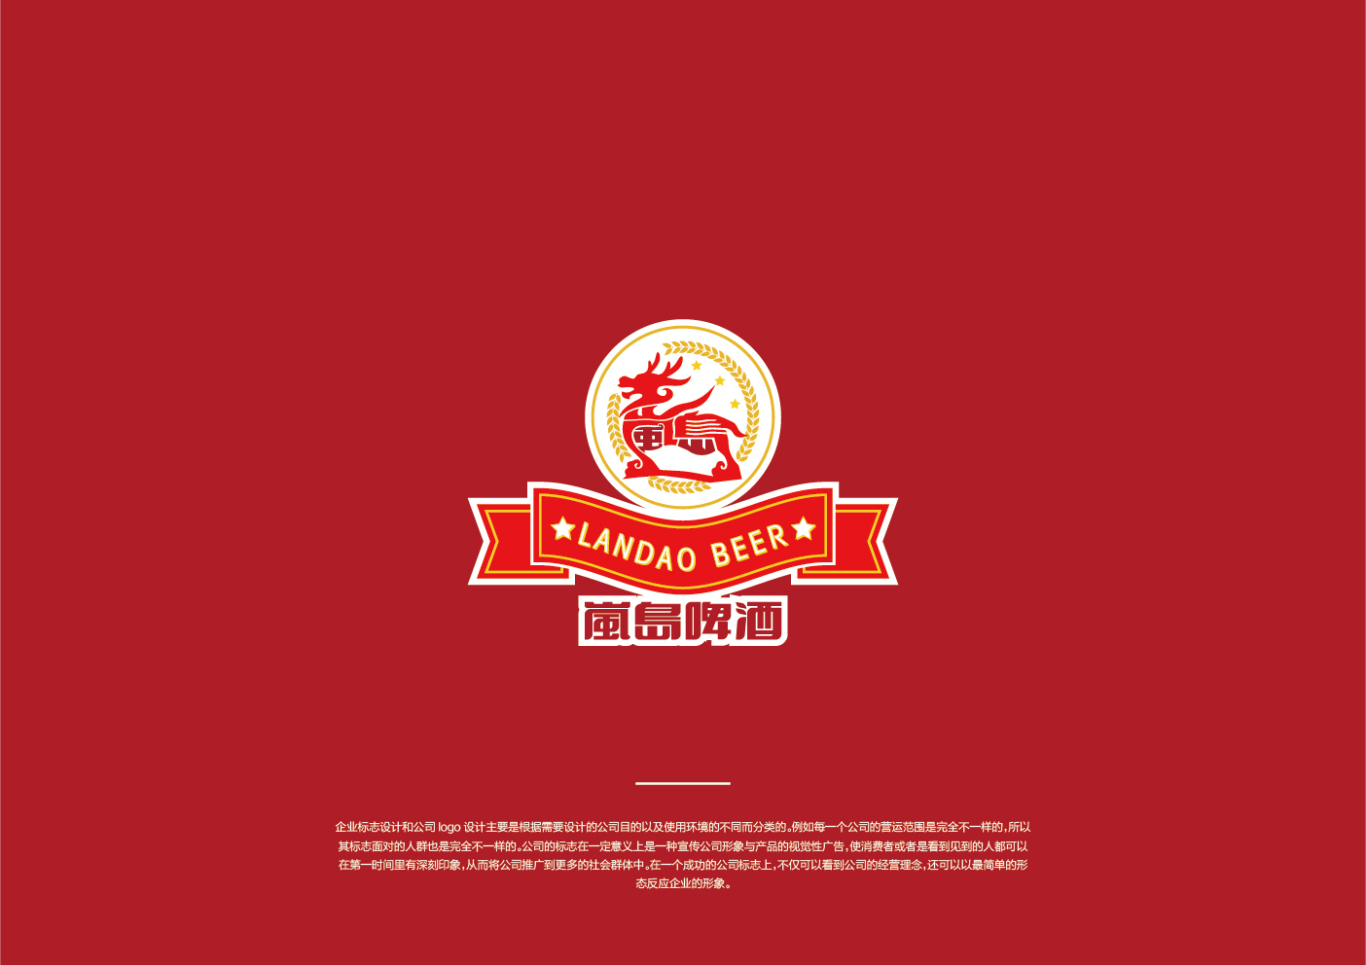 嵐島啤酒logo設計圖3